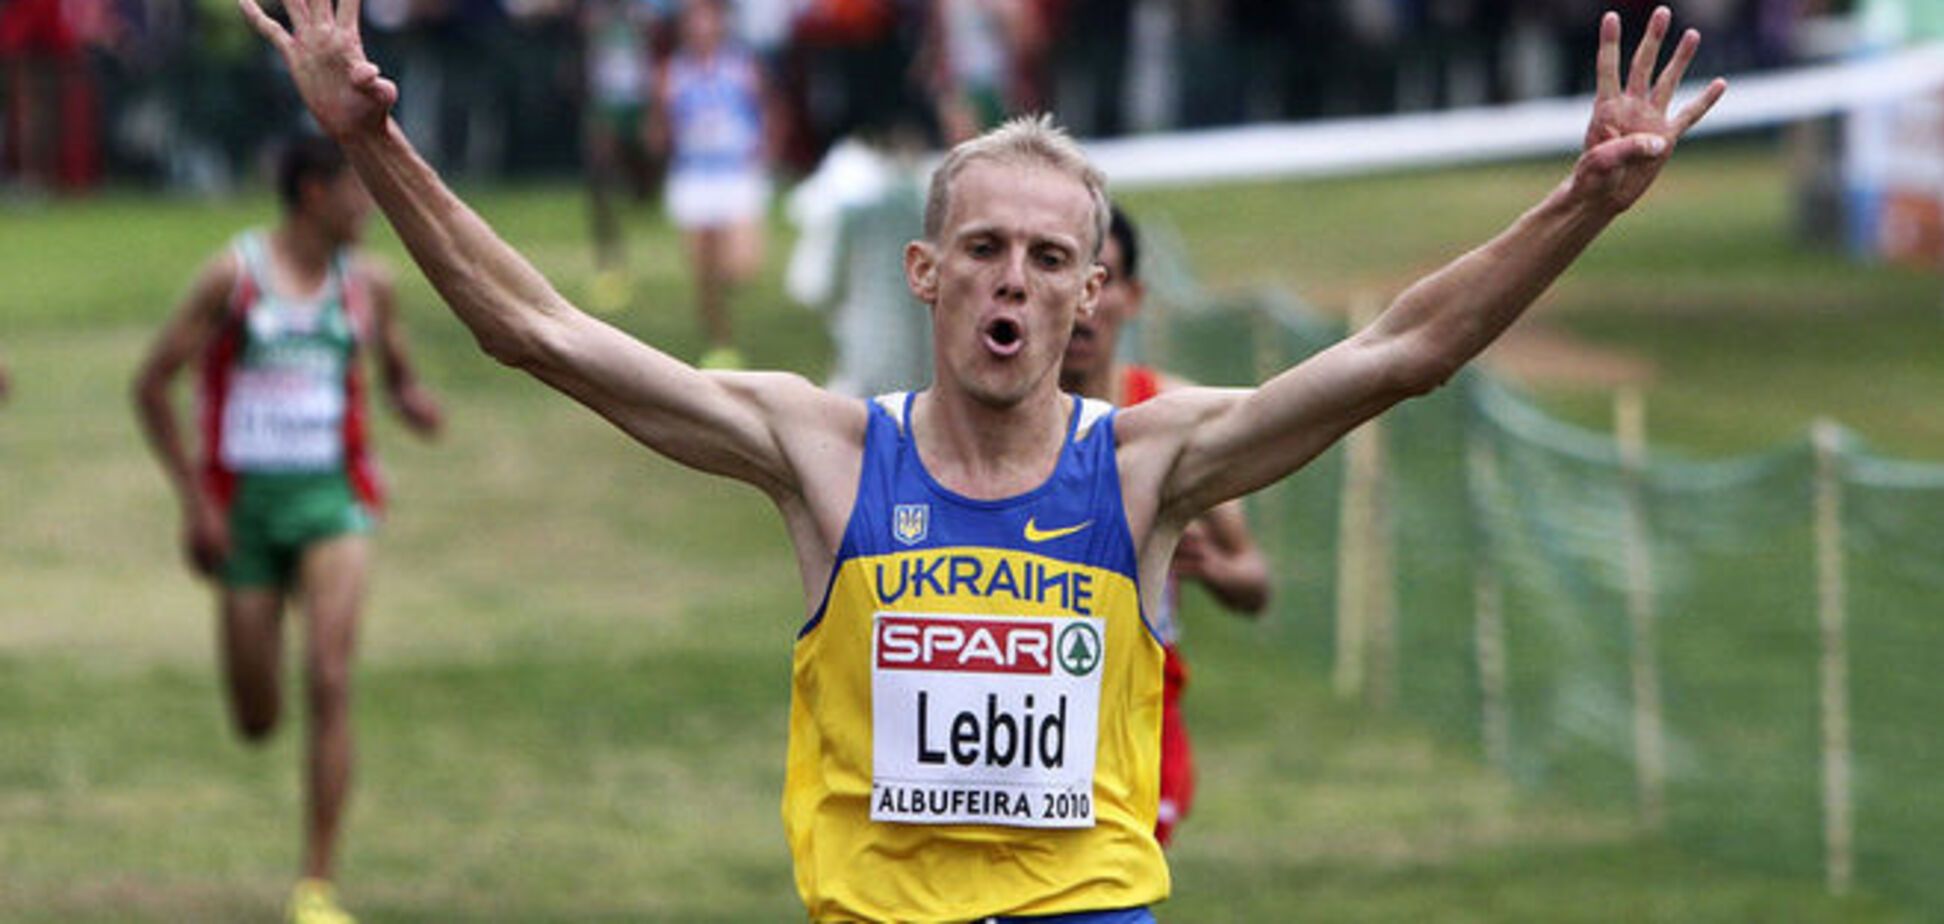 Украинец вошел в десятку одного из лучших марафонов планеты